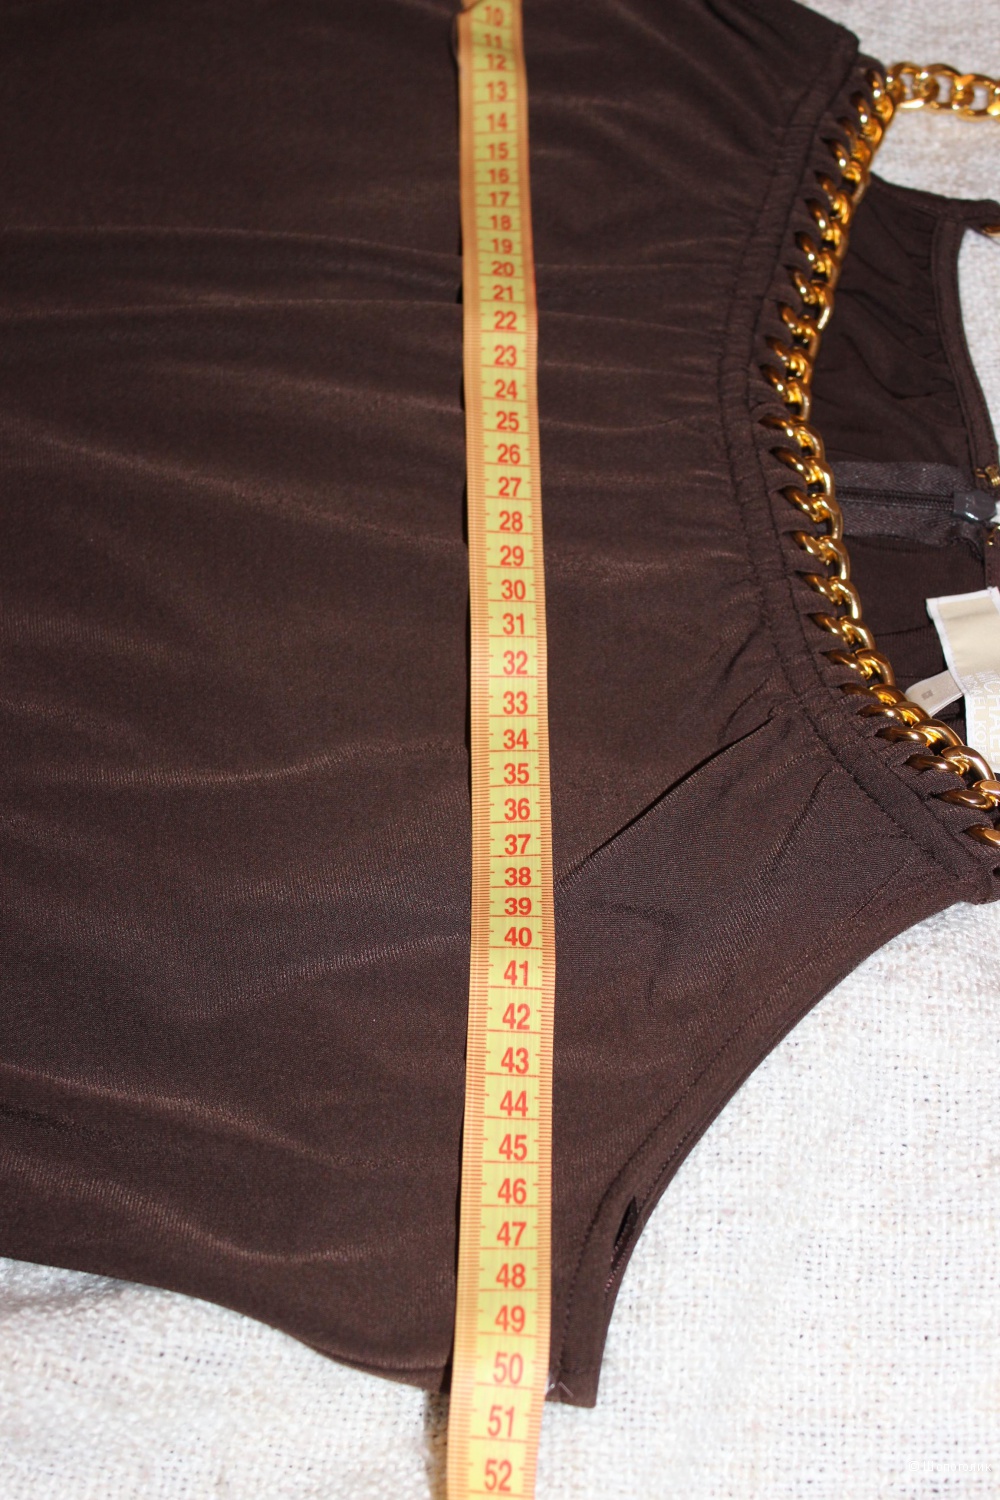 Комбинезон MICHAEL MICHAEL KORS. Размер M (на 46-50), цвет шоколадный.